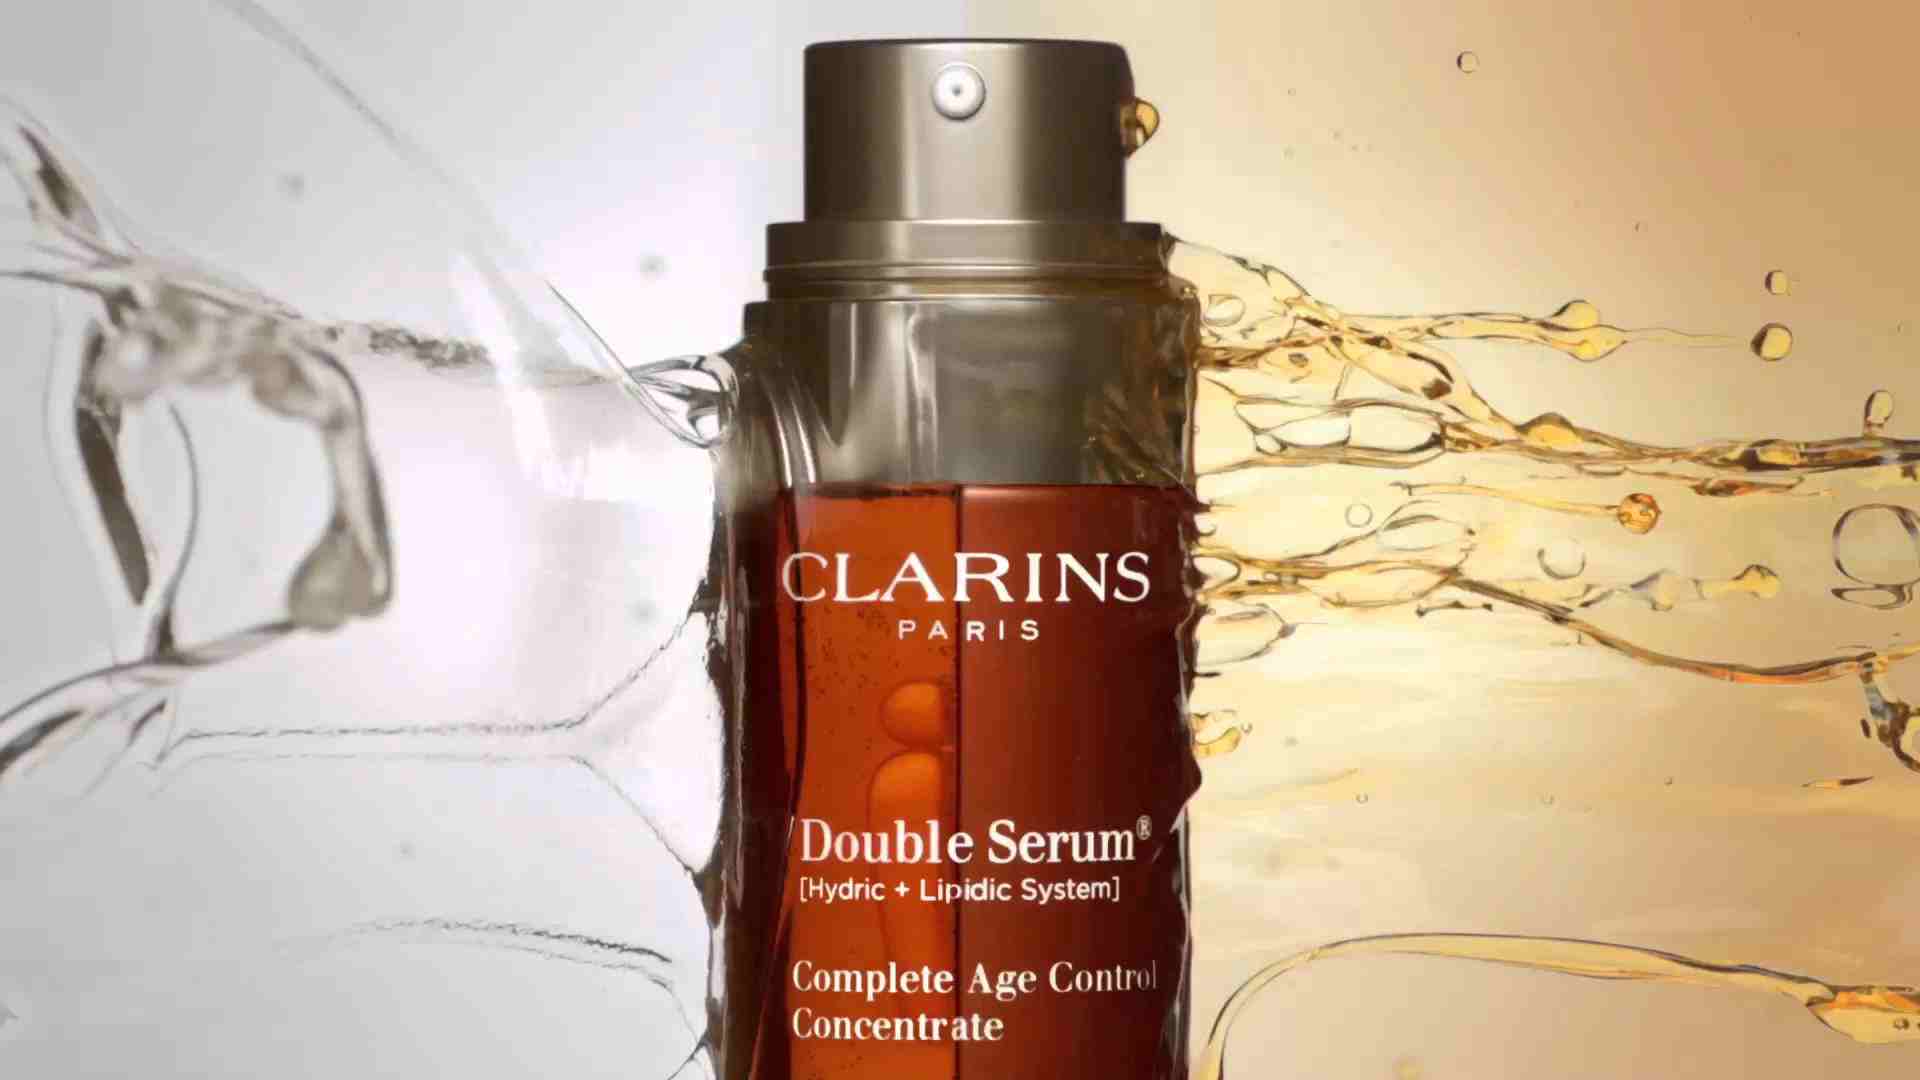 Double serum clarins : est-ce réellement utile de se le procurer